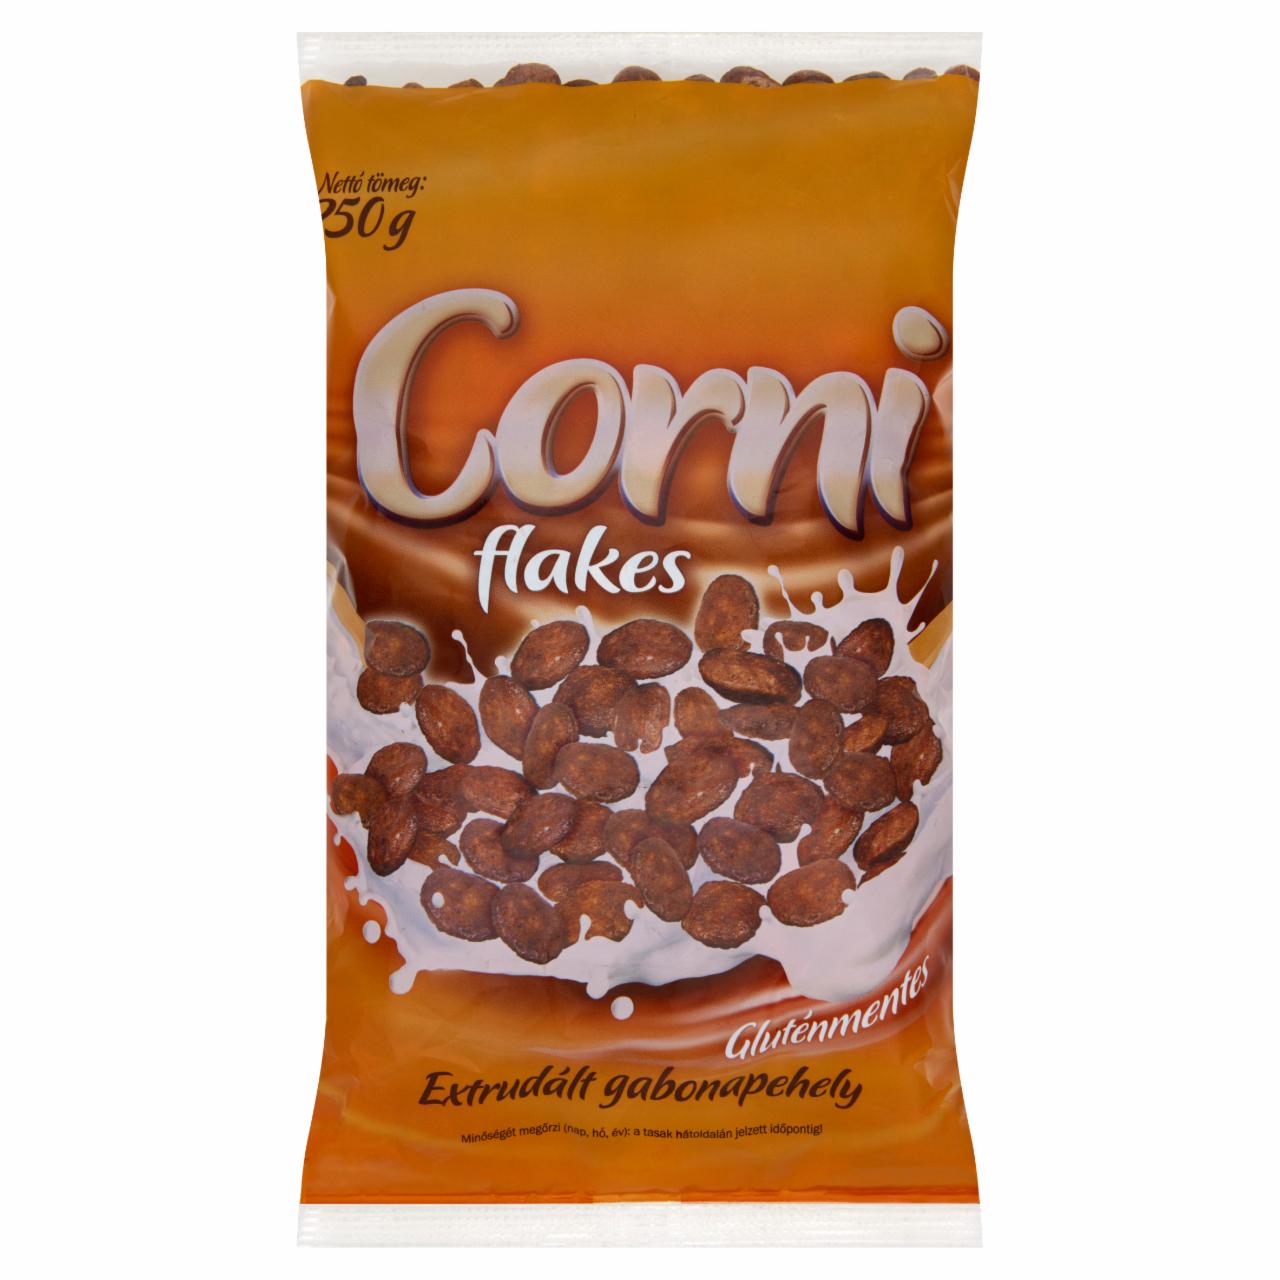 Képek - Corni Flakes gluténmentes csokoládé ízű extrudált gabonapehely 250 g